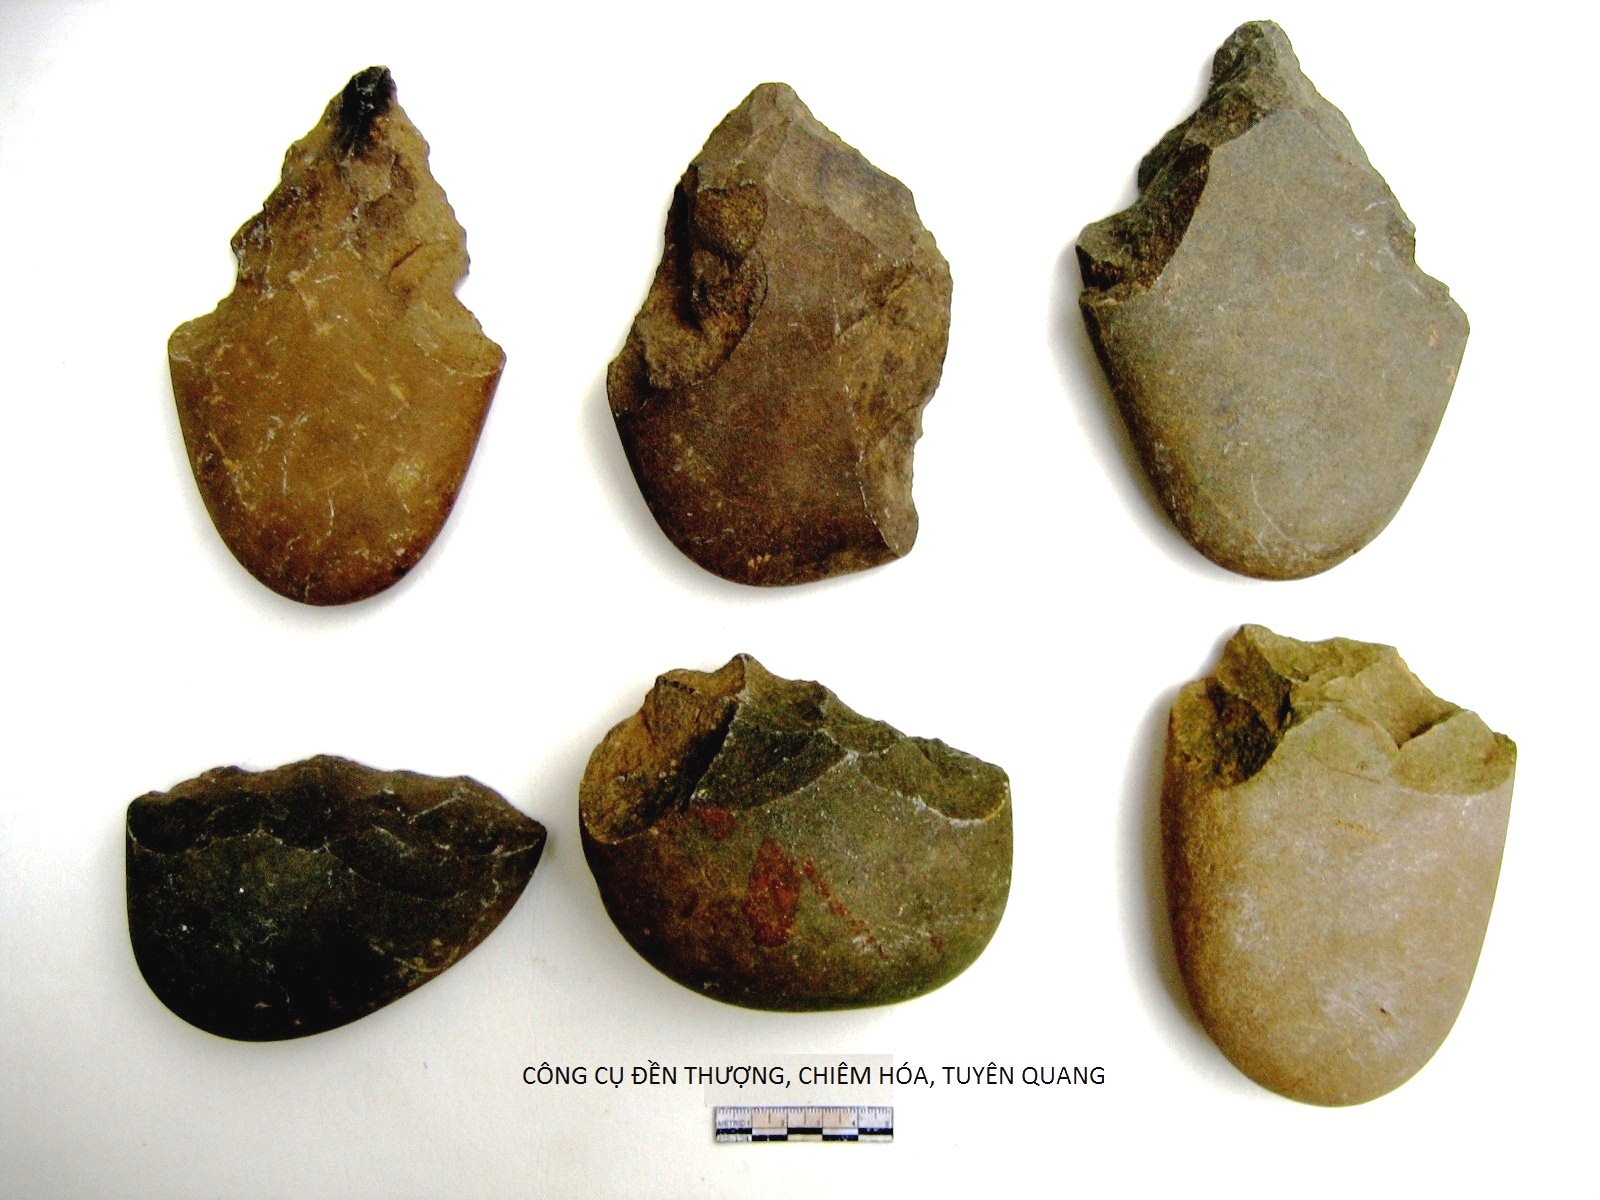 Công cụ lao động của cư dân hậu kỳ Đá cũ sống cách nay khoảng 20.000 năm. Ảnh: vass.gov.vn